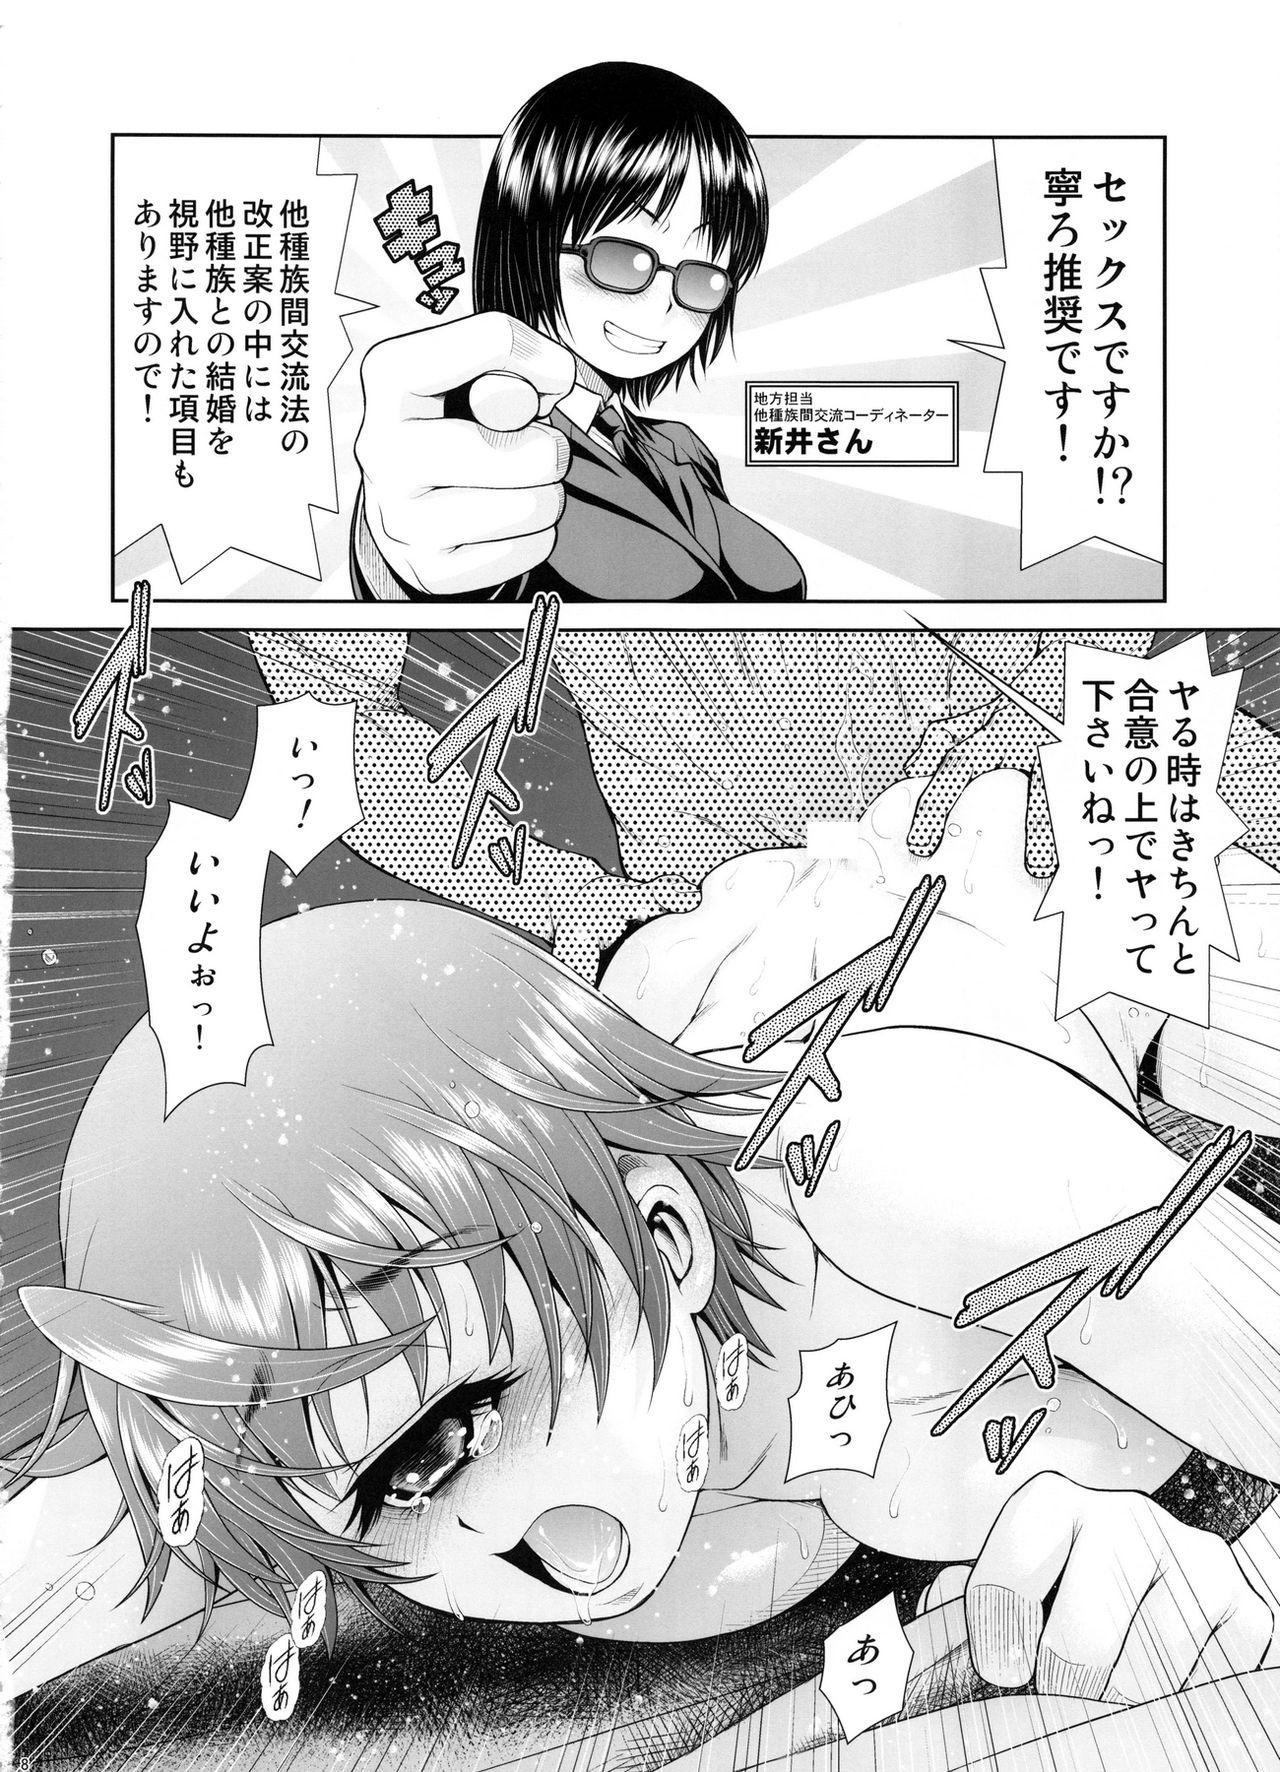 Adolescente Monmusu Biyori - Monster musume no iru nichijou Adolescente - Page 7